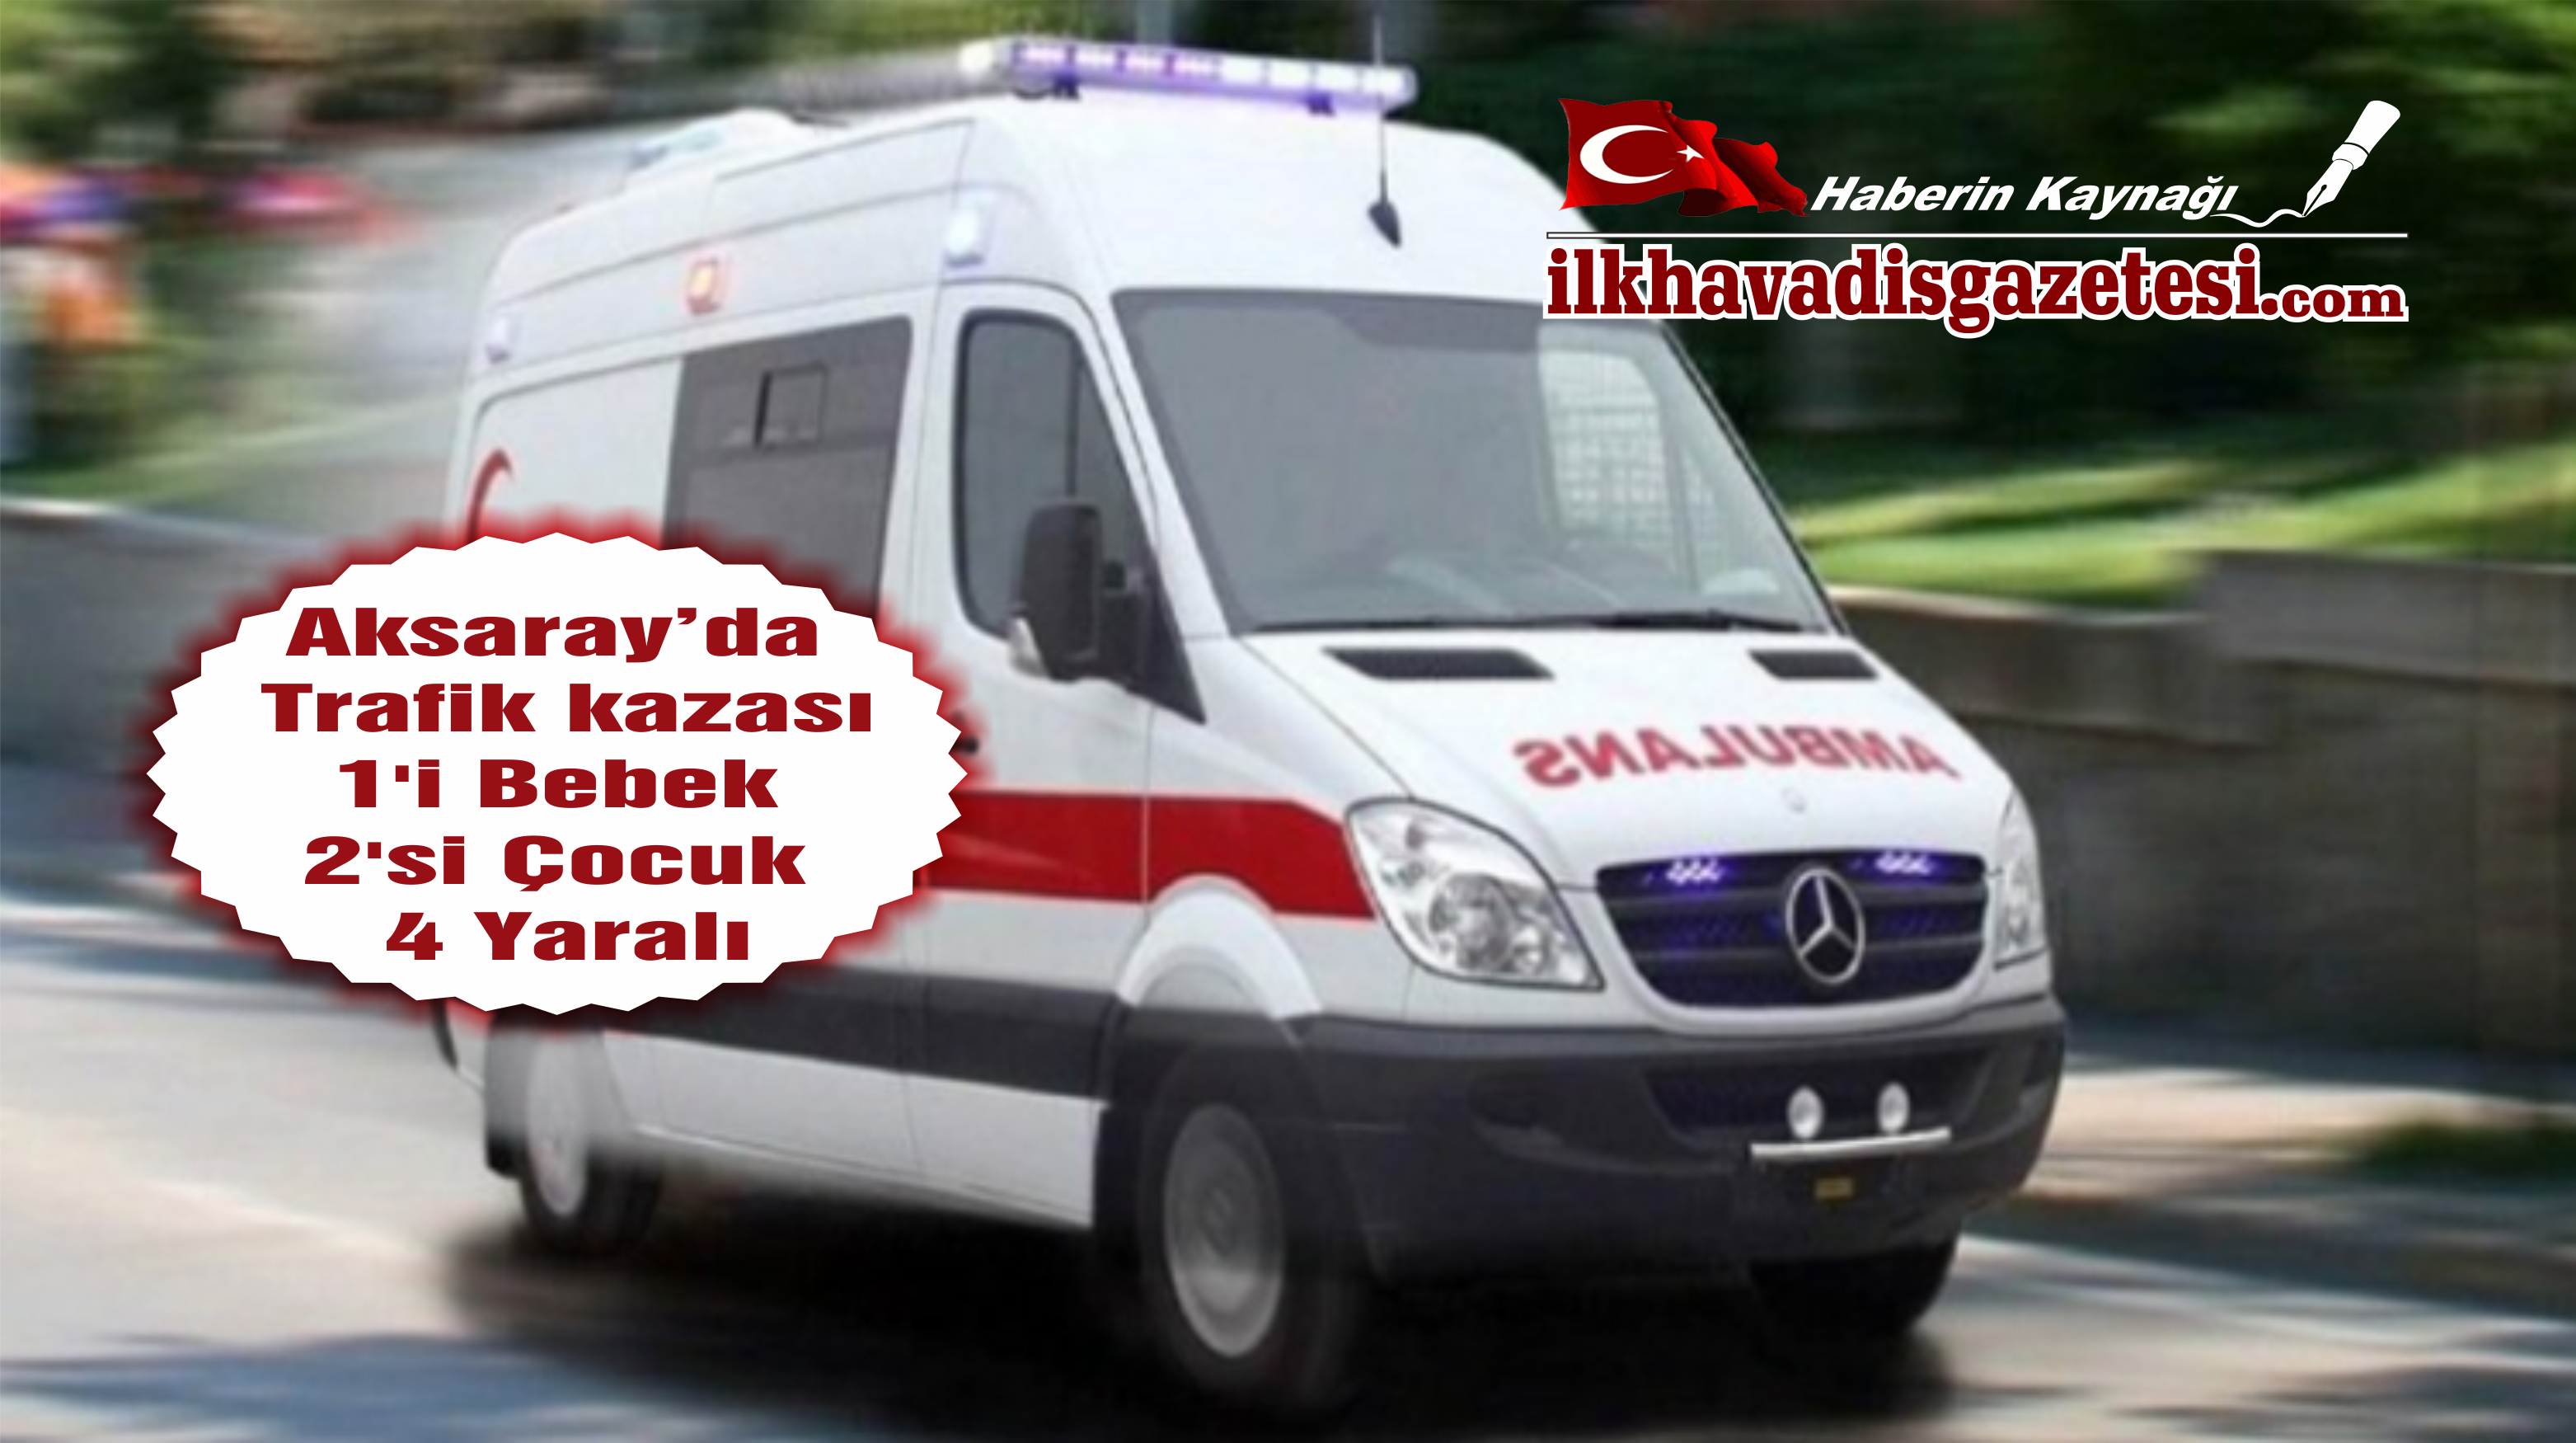 Aksaray’da Trafik kazası 1’i bebek 2 ‘si çocuk 4 yaralı